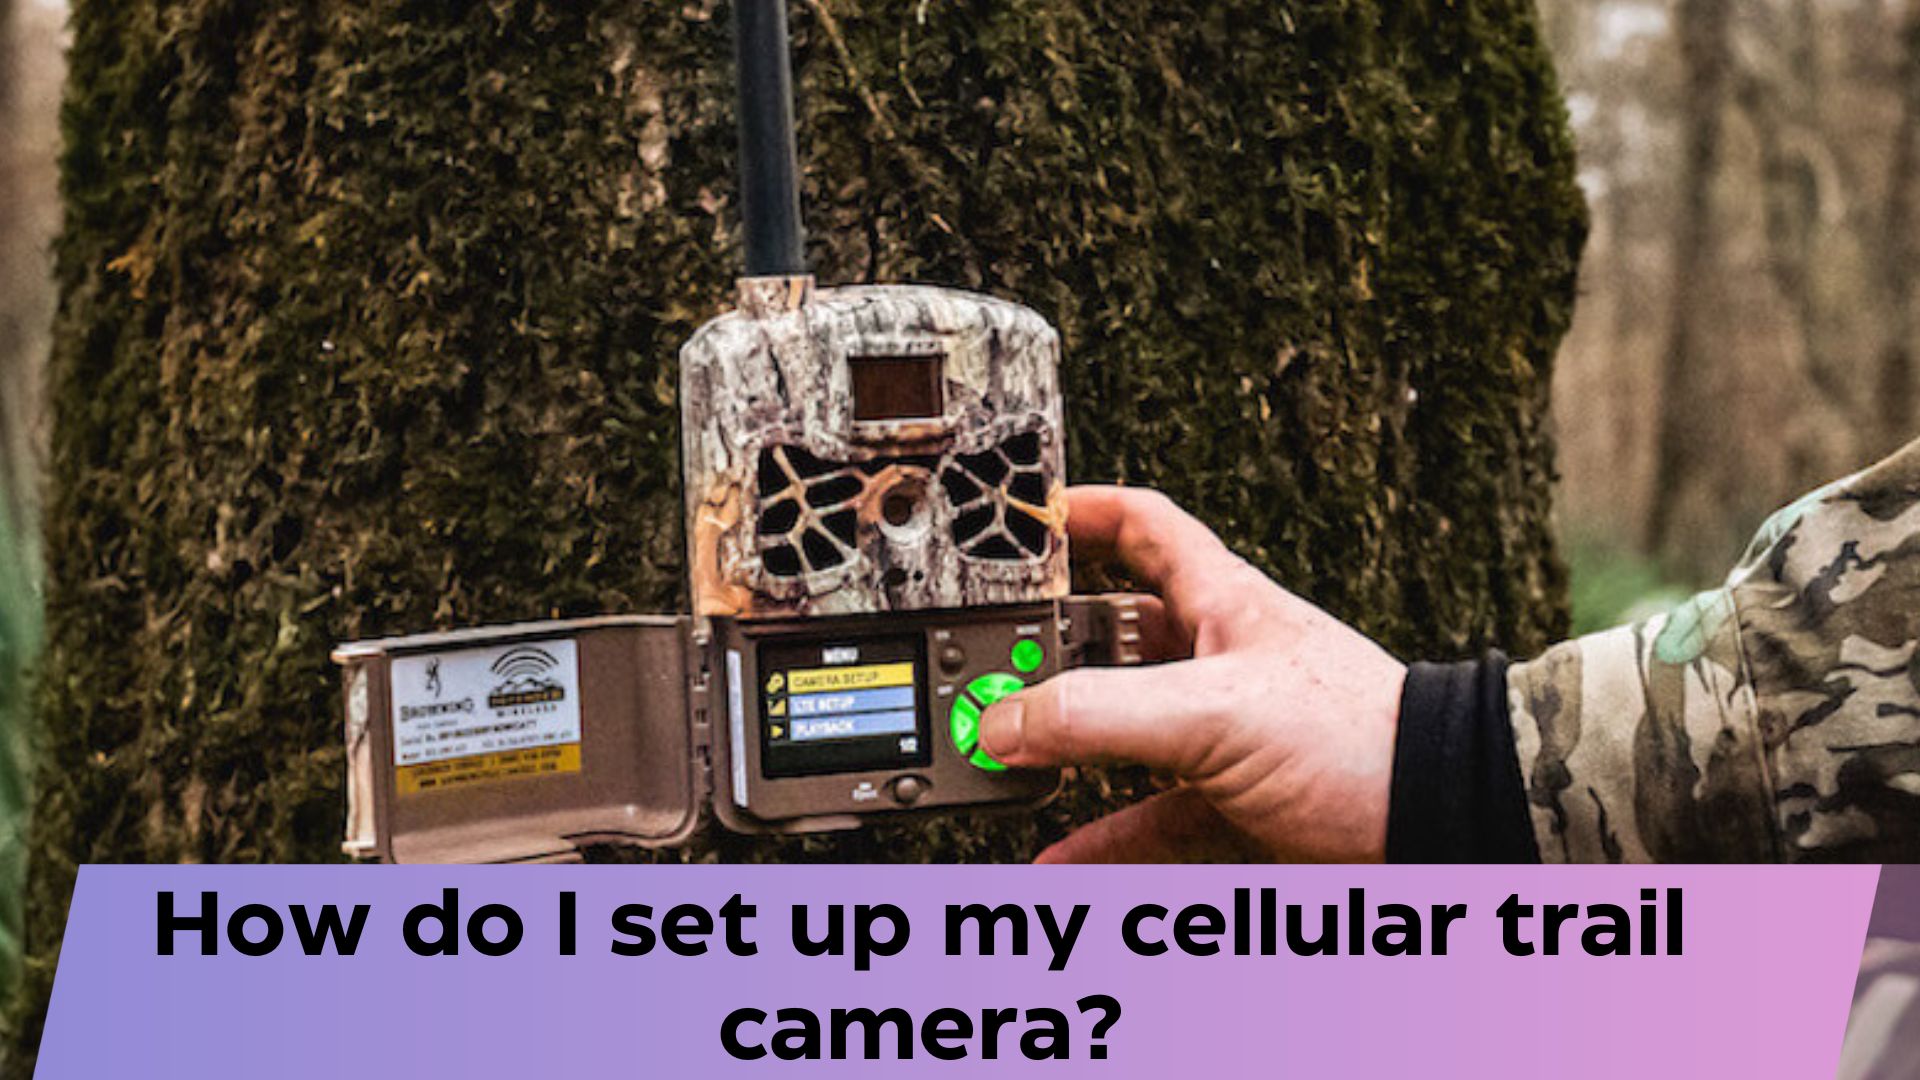 How do I set up my cellular trail camera?